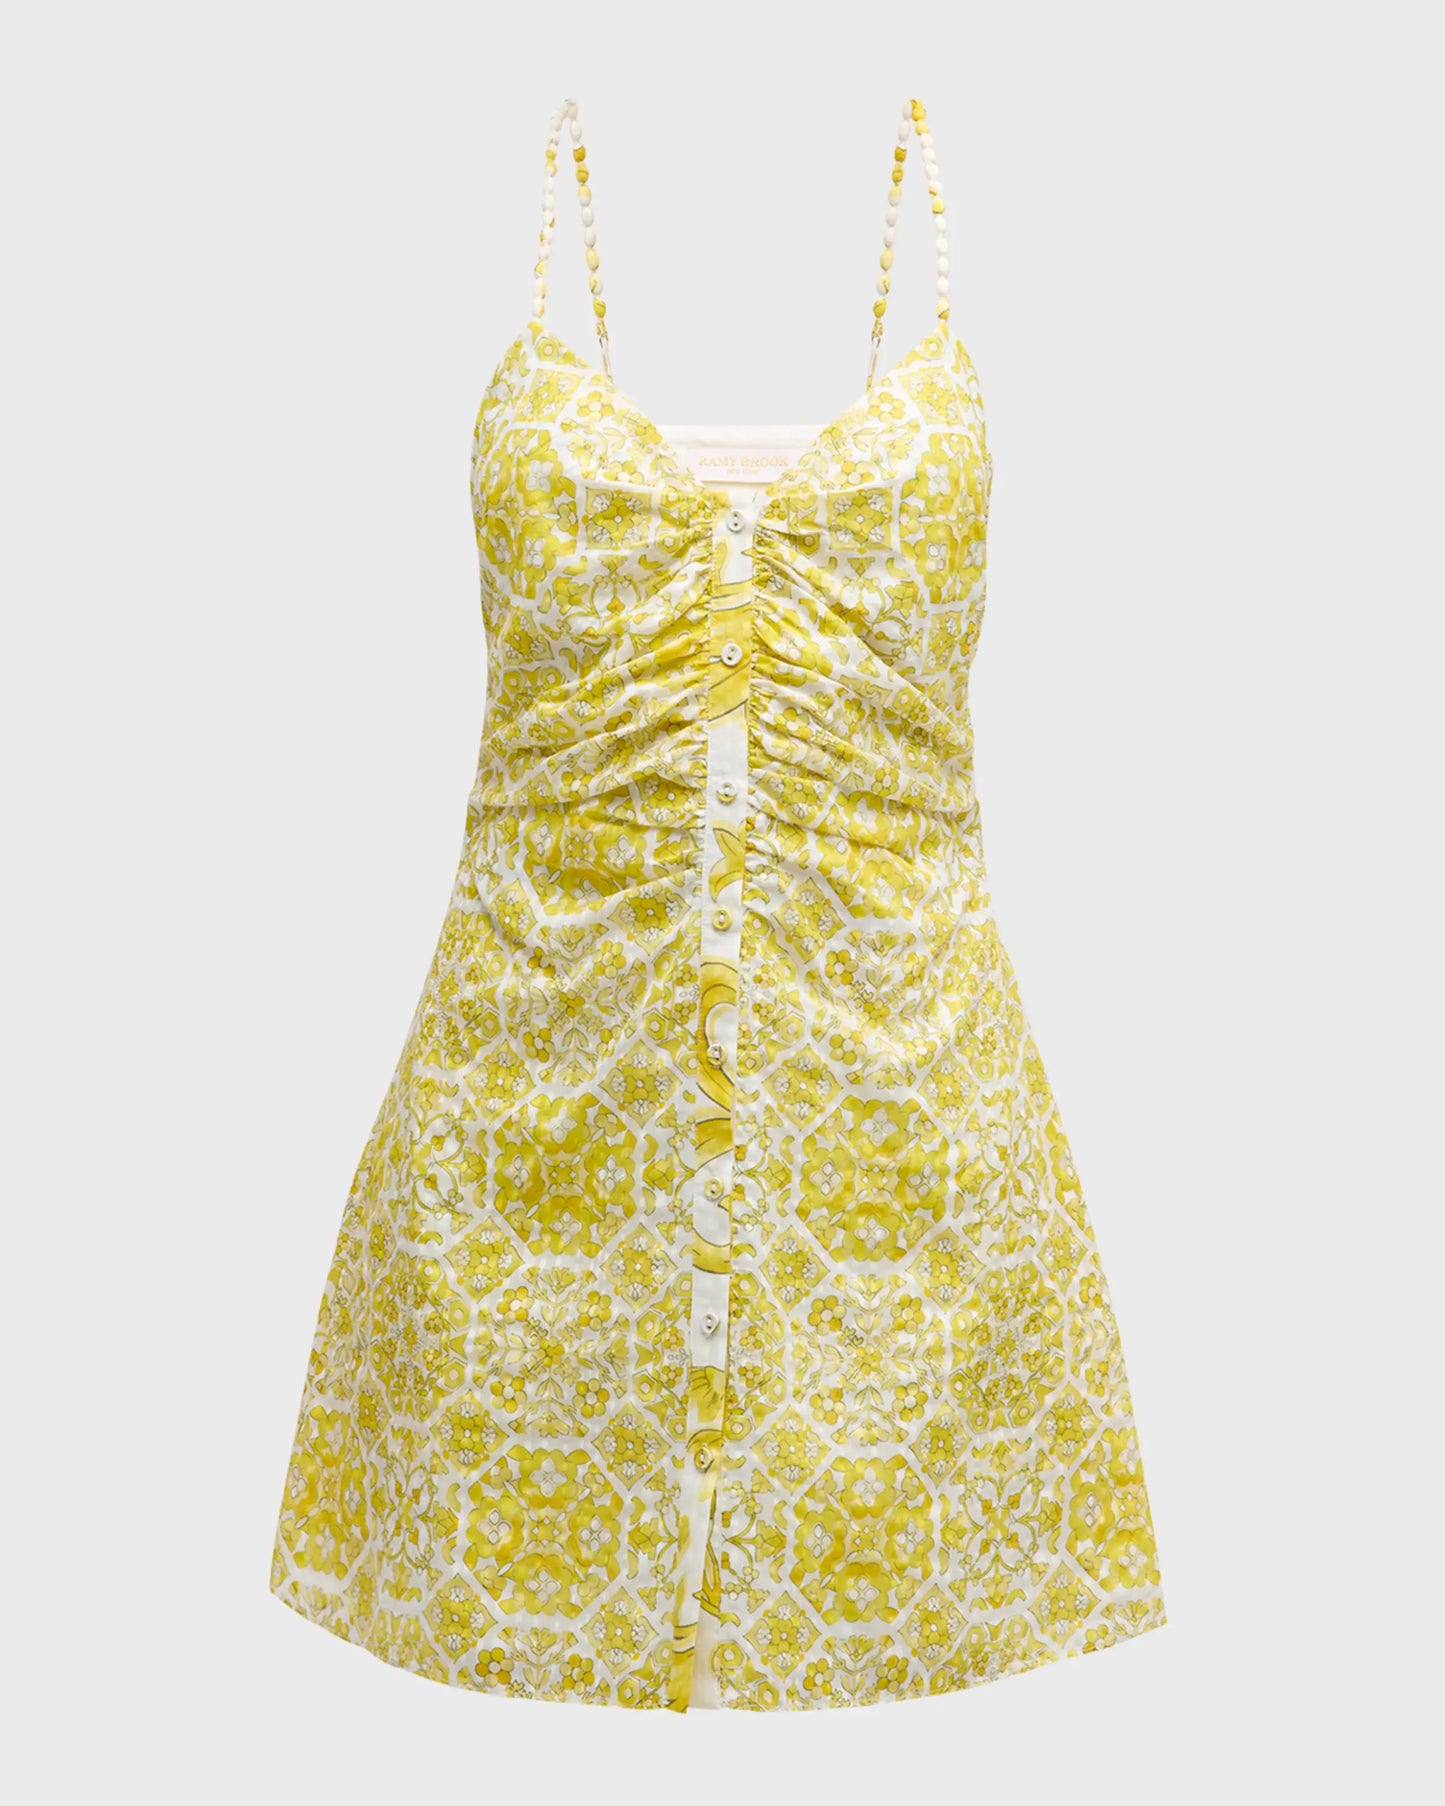 Addie Sleeveless Mini Dress in Yellow